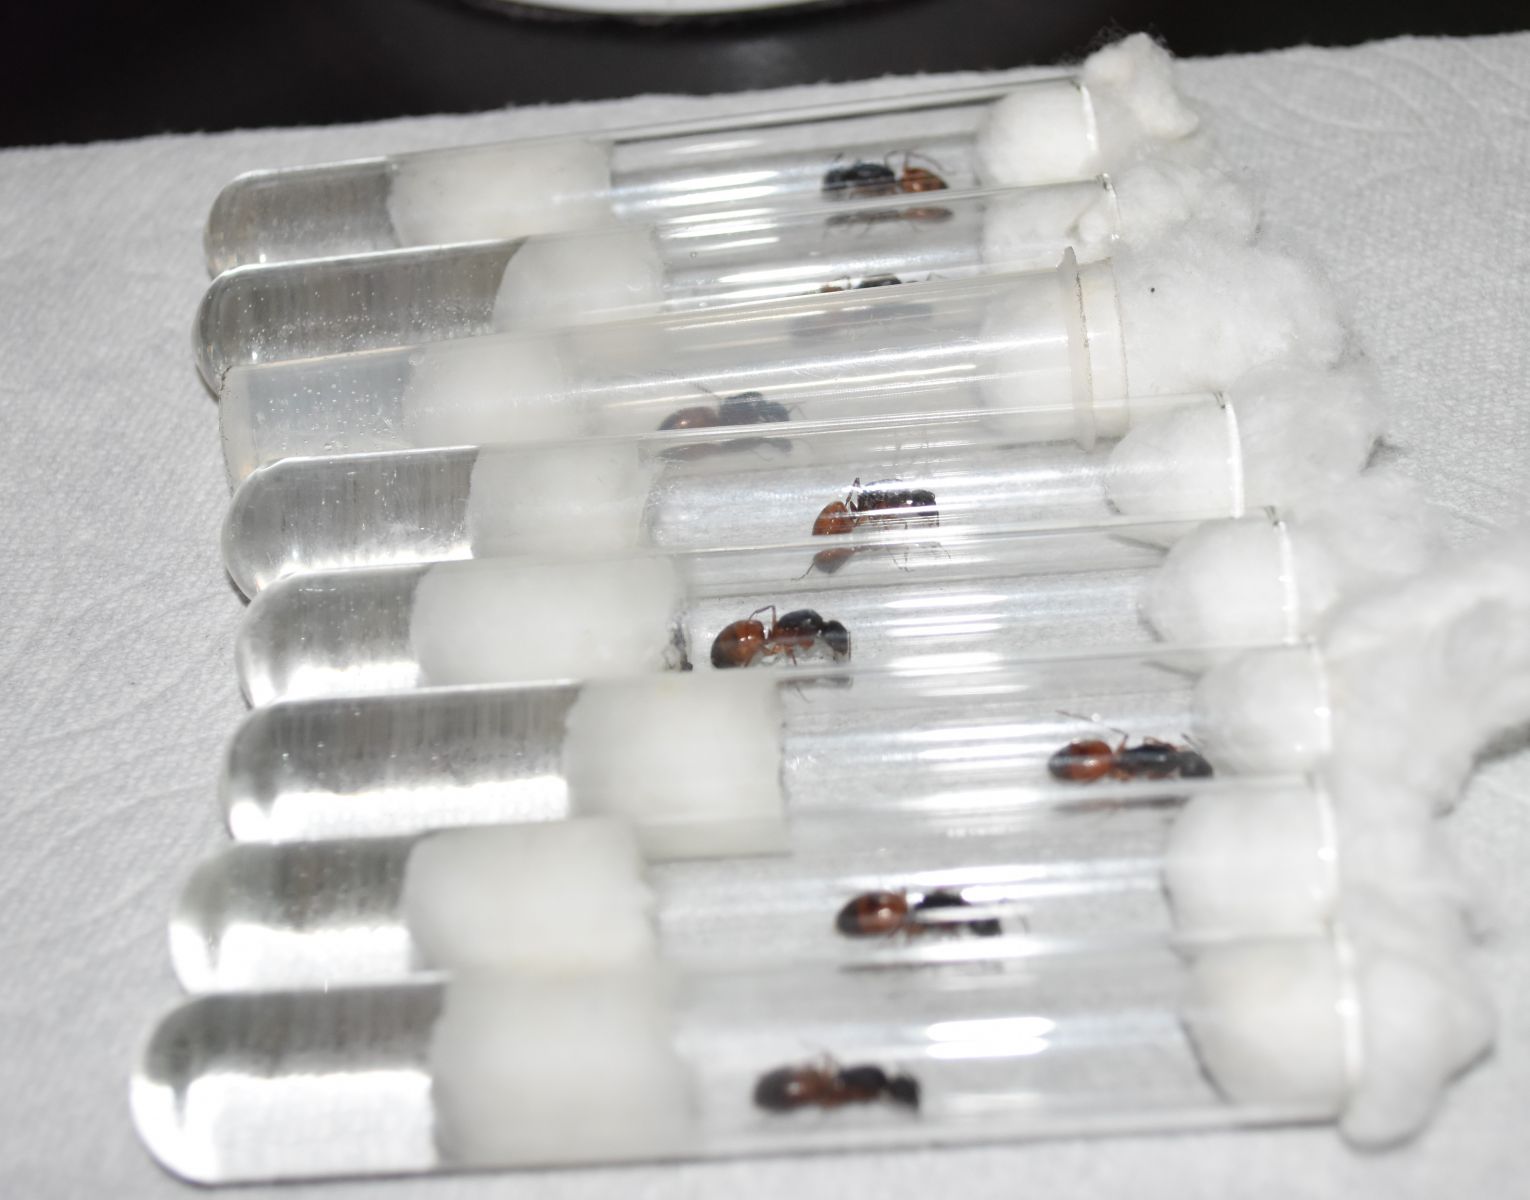 8 Camponotus sansabeanus queens in tubes